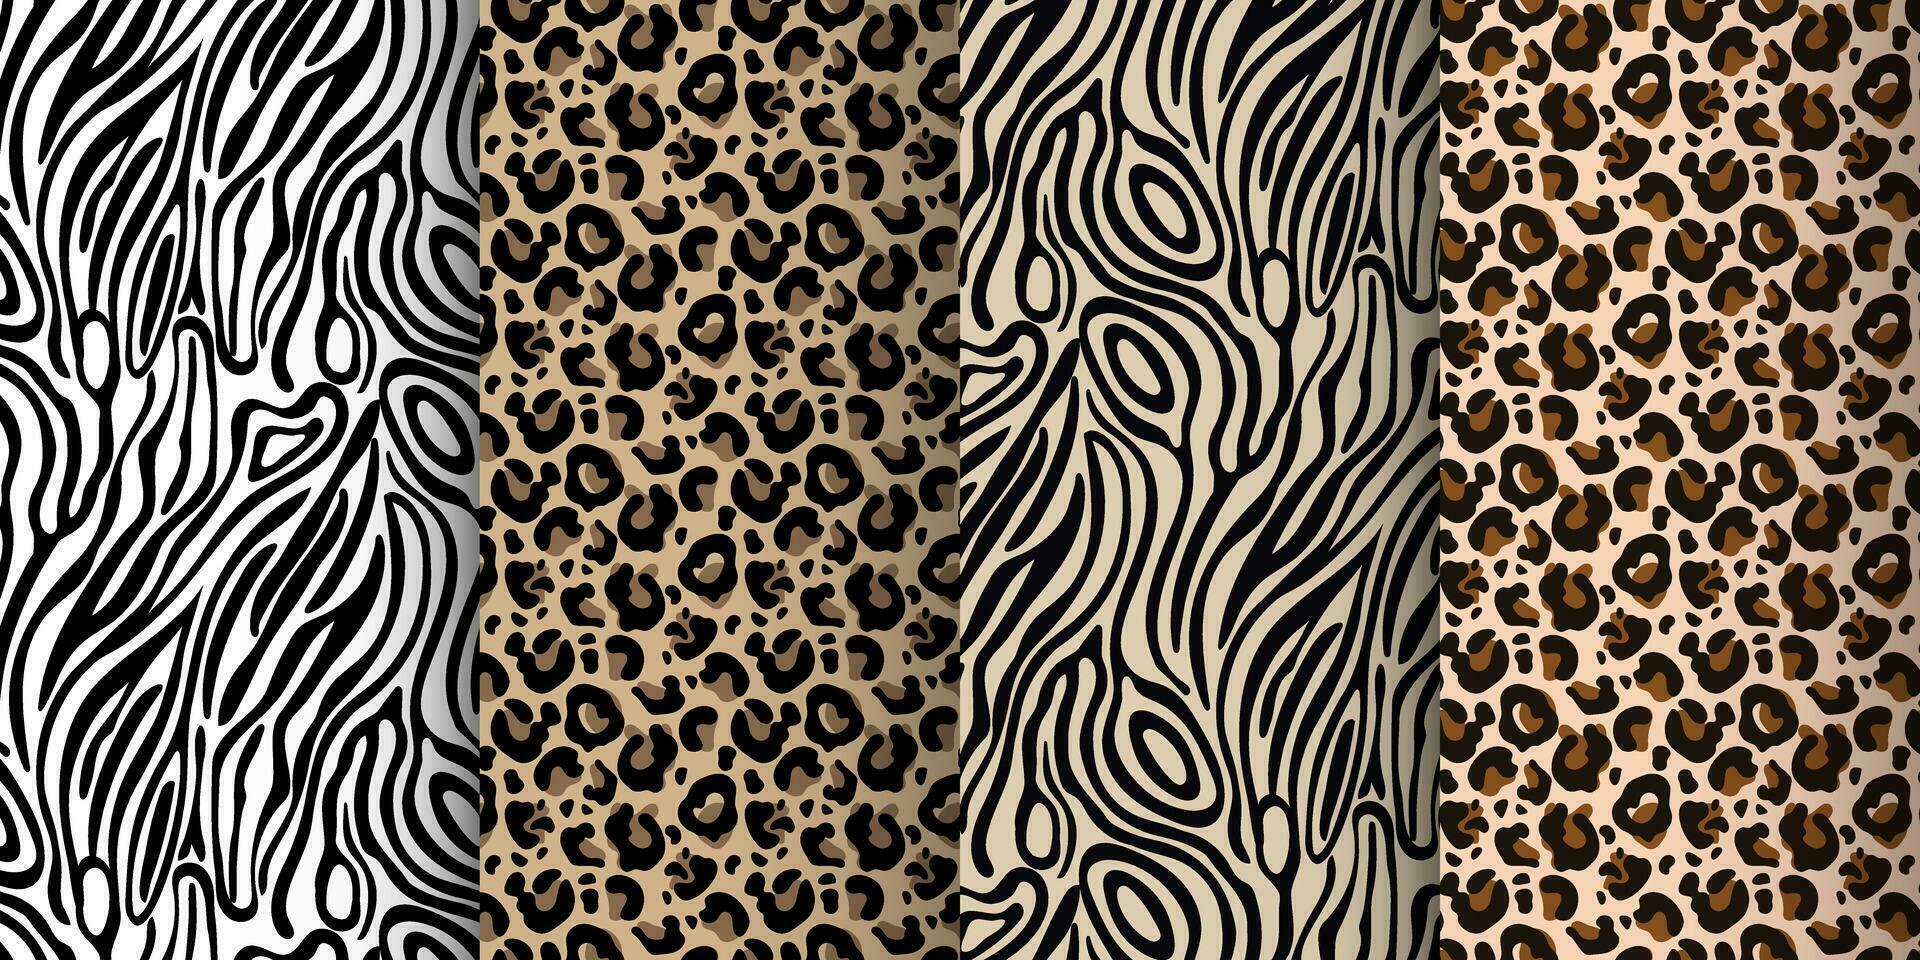 luipaard, tijger naadloos patroon, abstract wild dier huid achtergrond. reeks van luipaard texturen, achtergrond ontwerp, afdrukken, textiel. vector